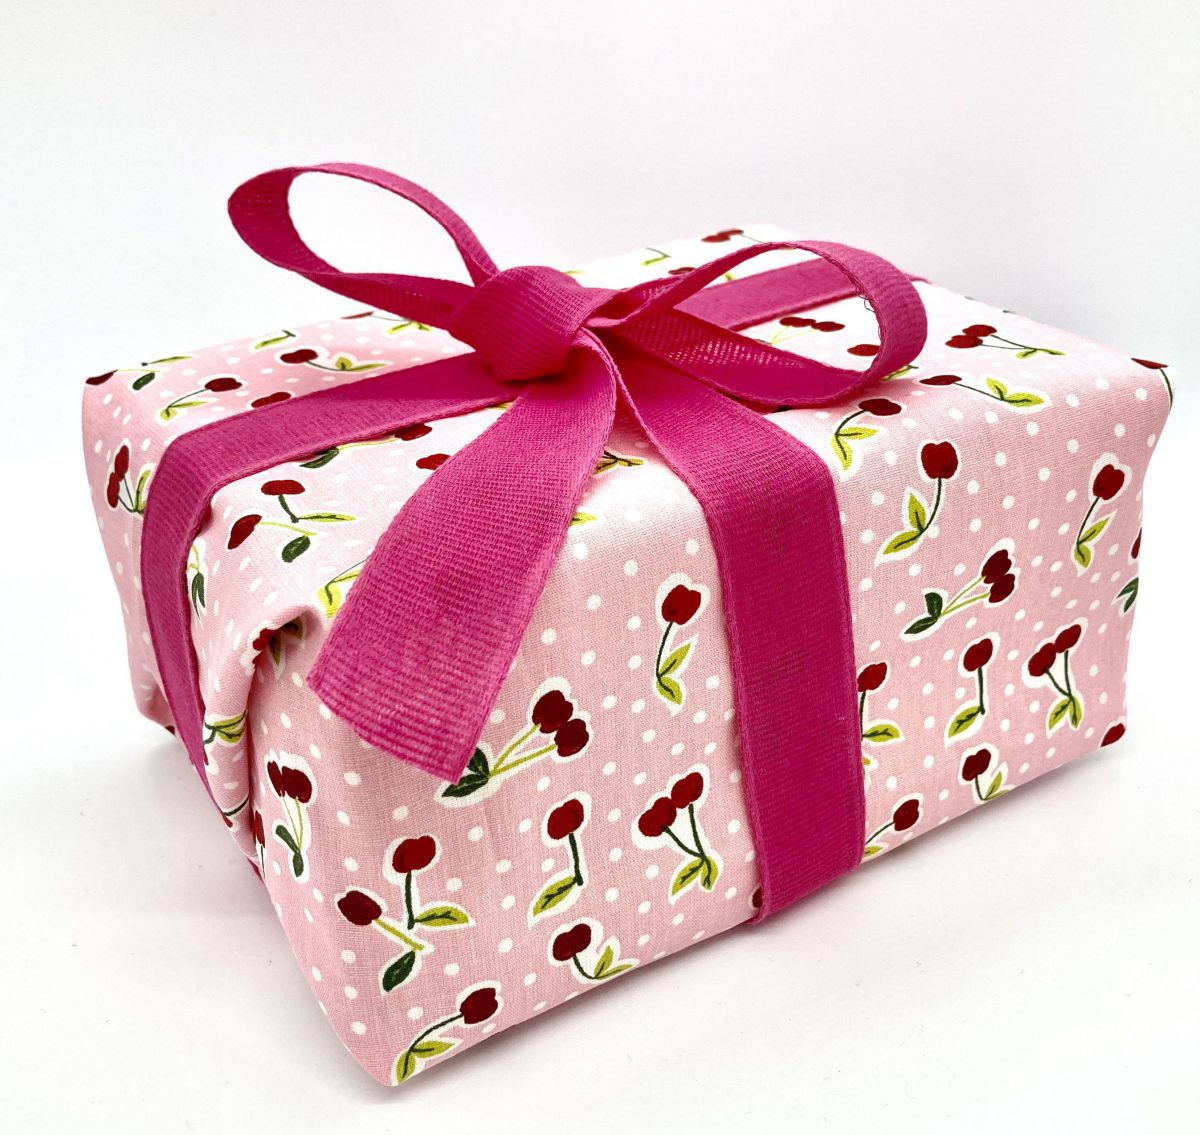 Ein Paket mit pinkter Schleife und rosa Geschenkstoff, der mit Kirschen und weißen Punkten bedruckt ist.